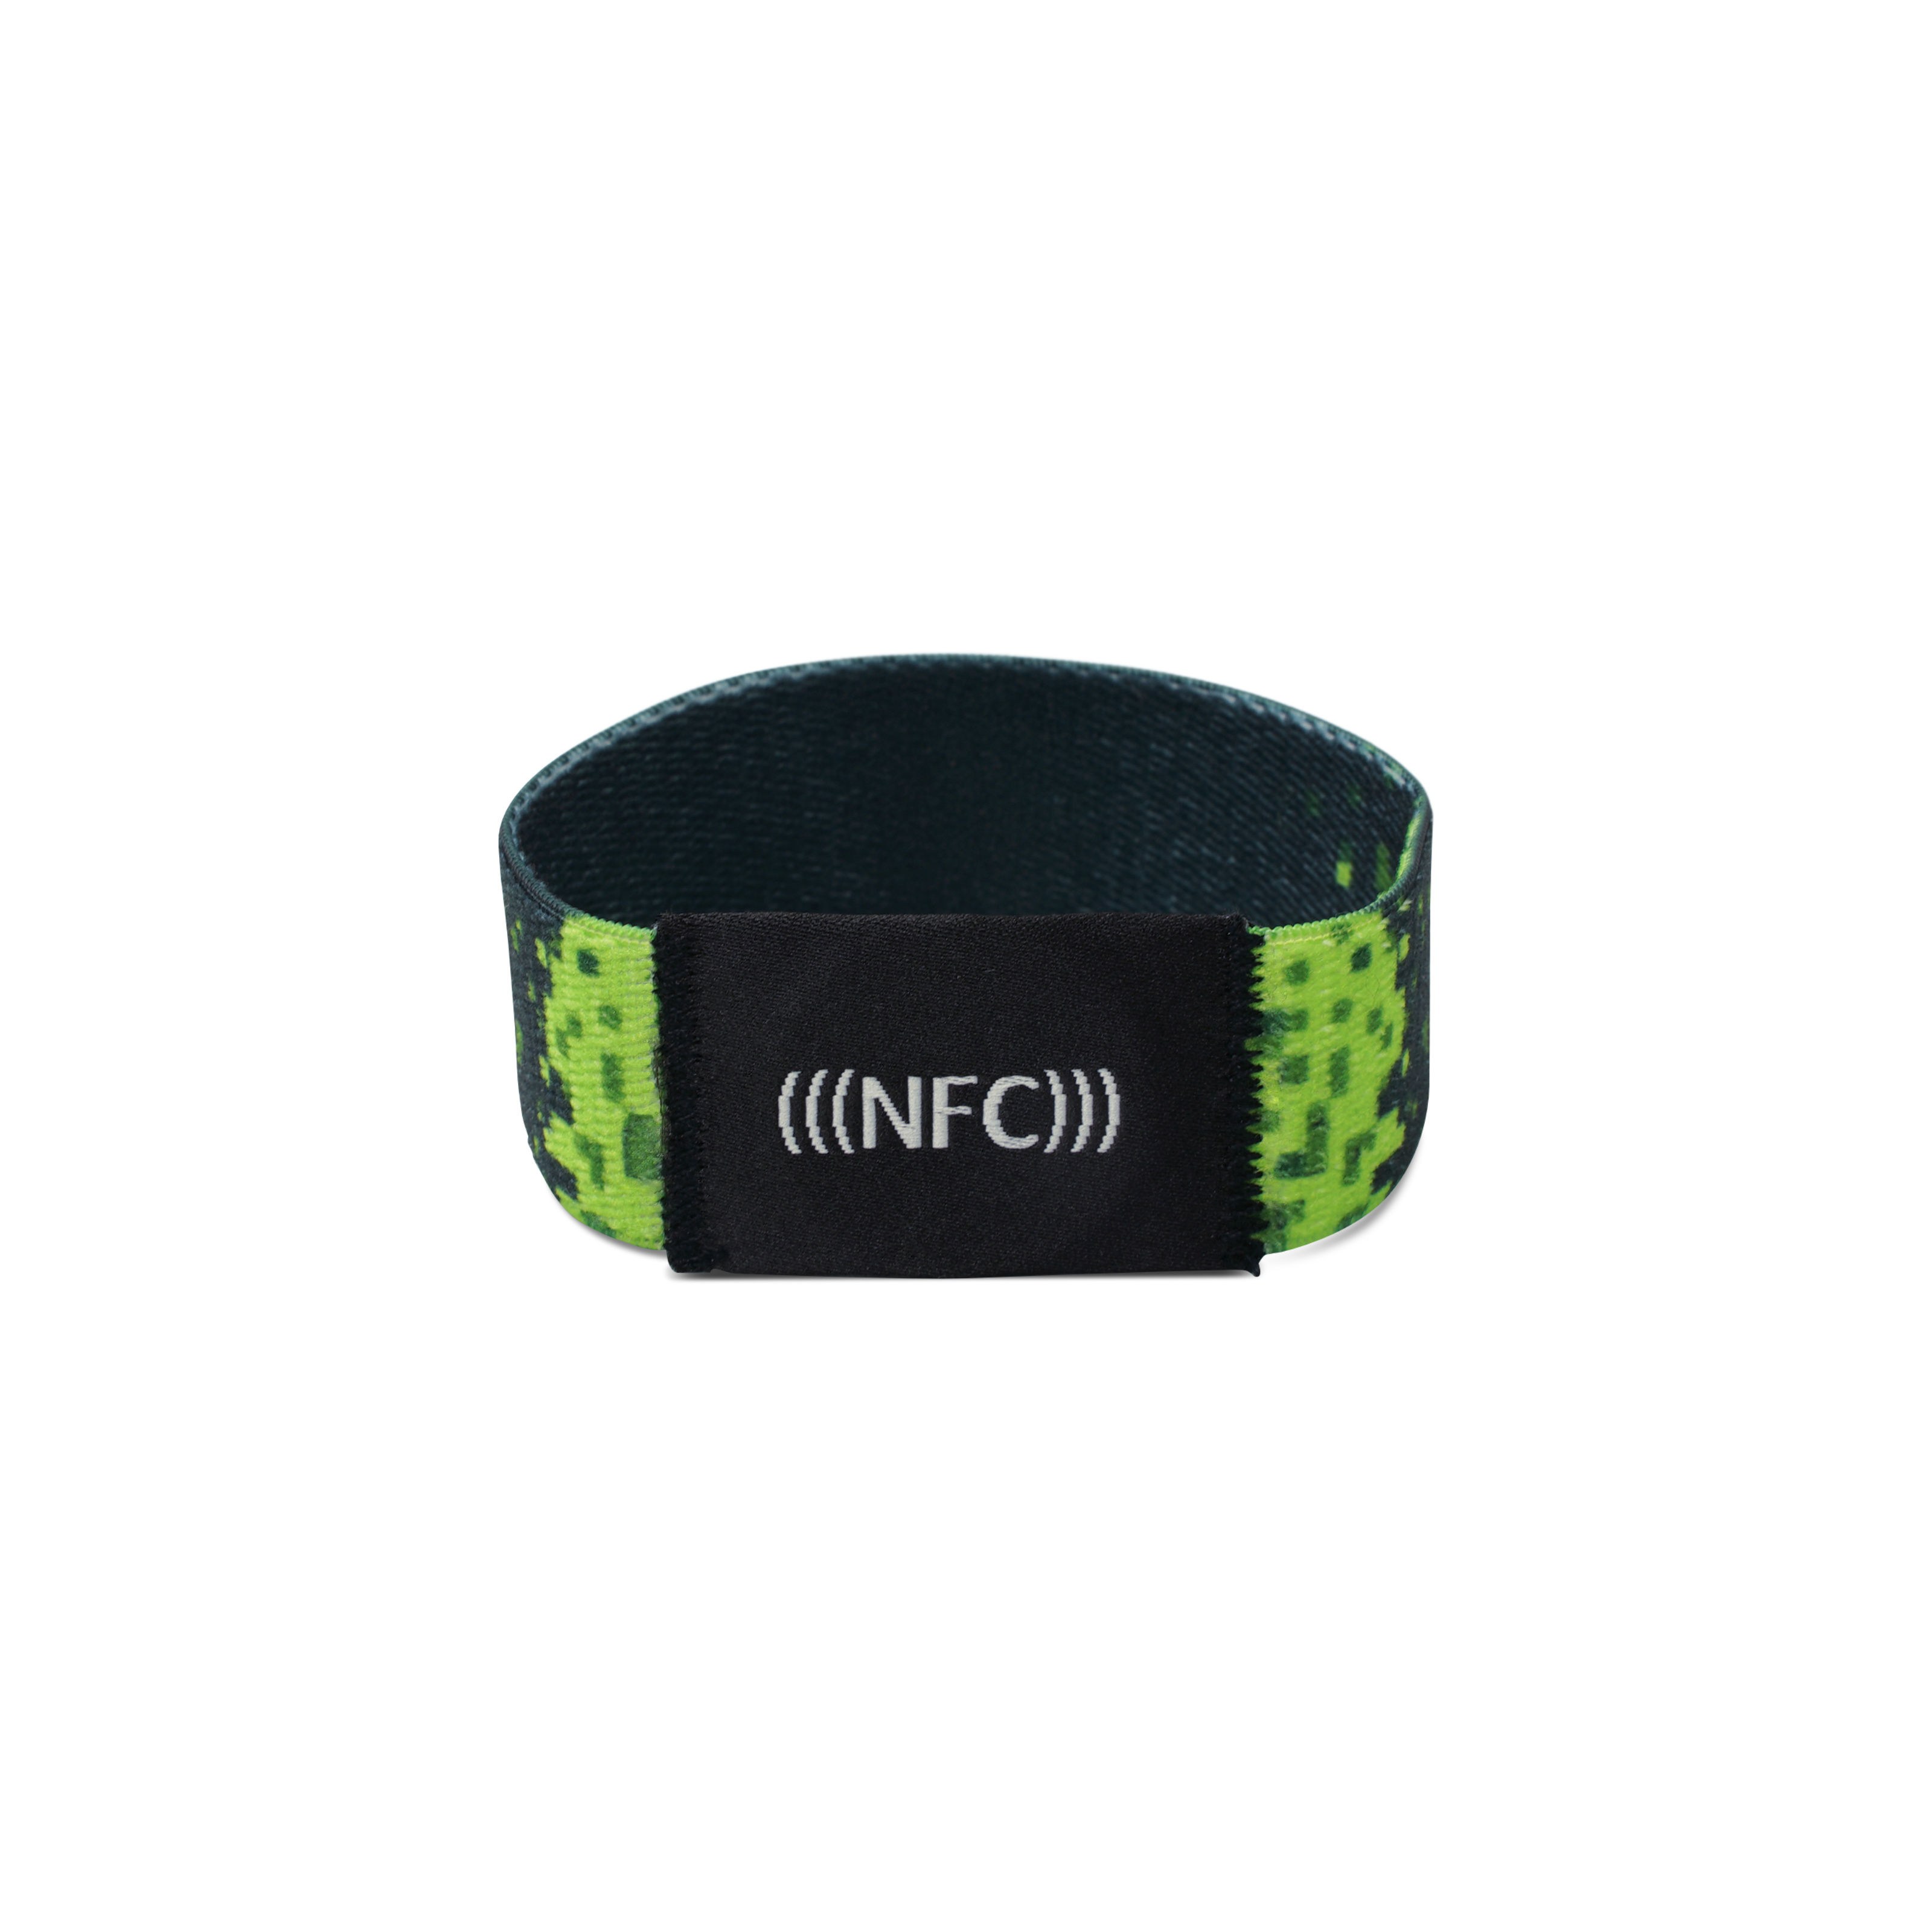 Vorderseite NFC Armband aus dunkelgrünem Stoff mit Pixelmuster und "NFC" Aufstickung